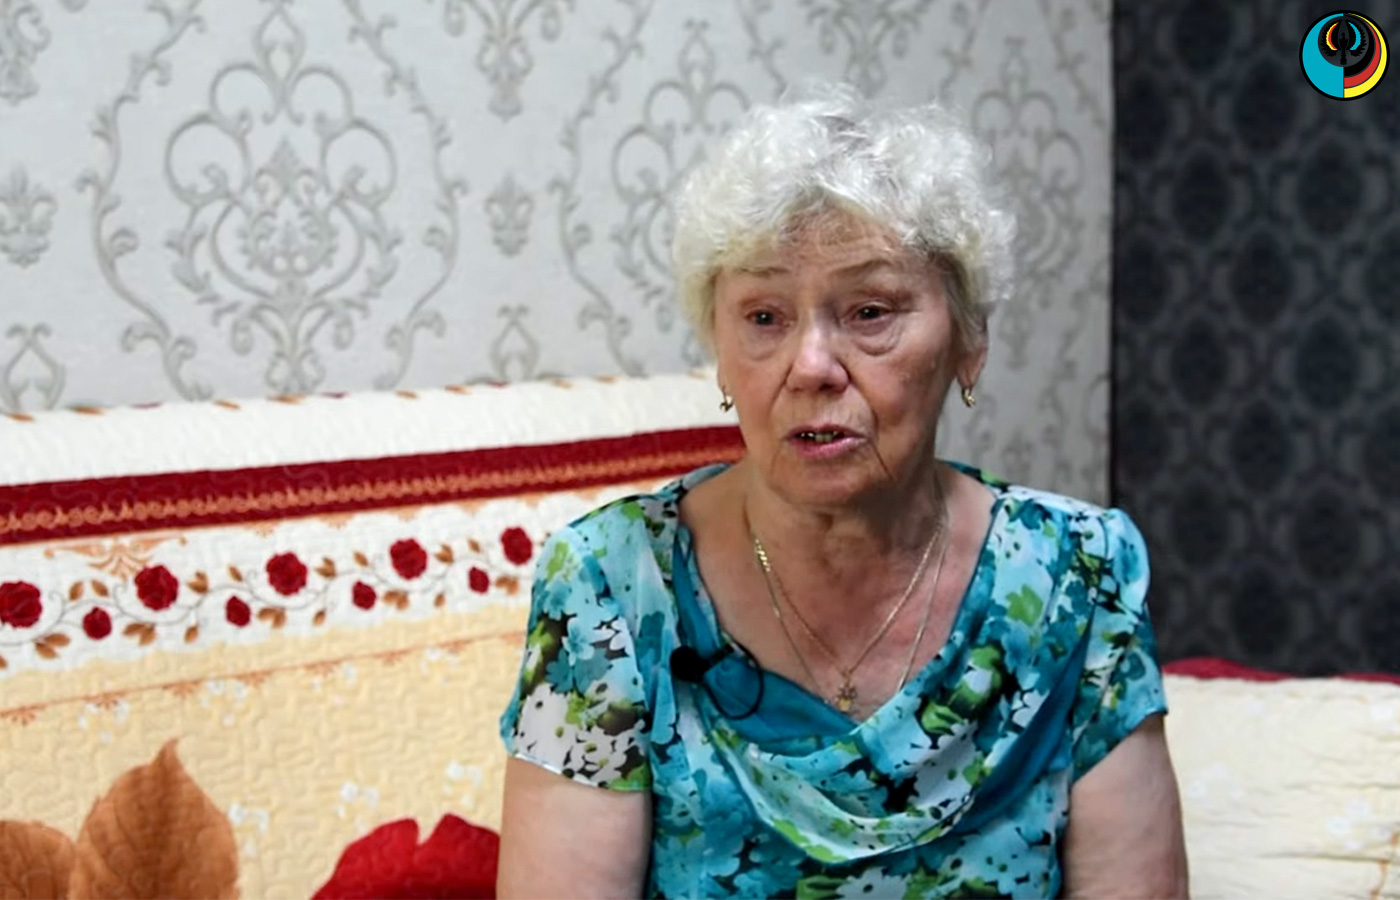 ВИДЕО: Ольга Герасименко: «Вся моя жизнь прошла здесь, в Казахстане»